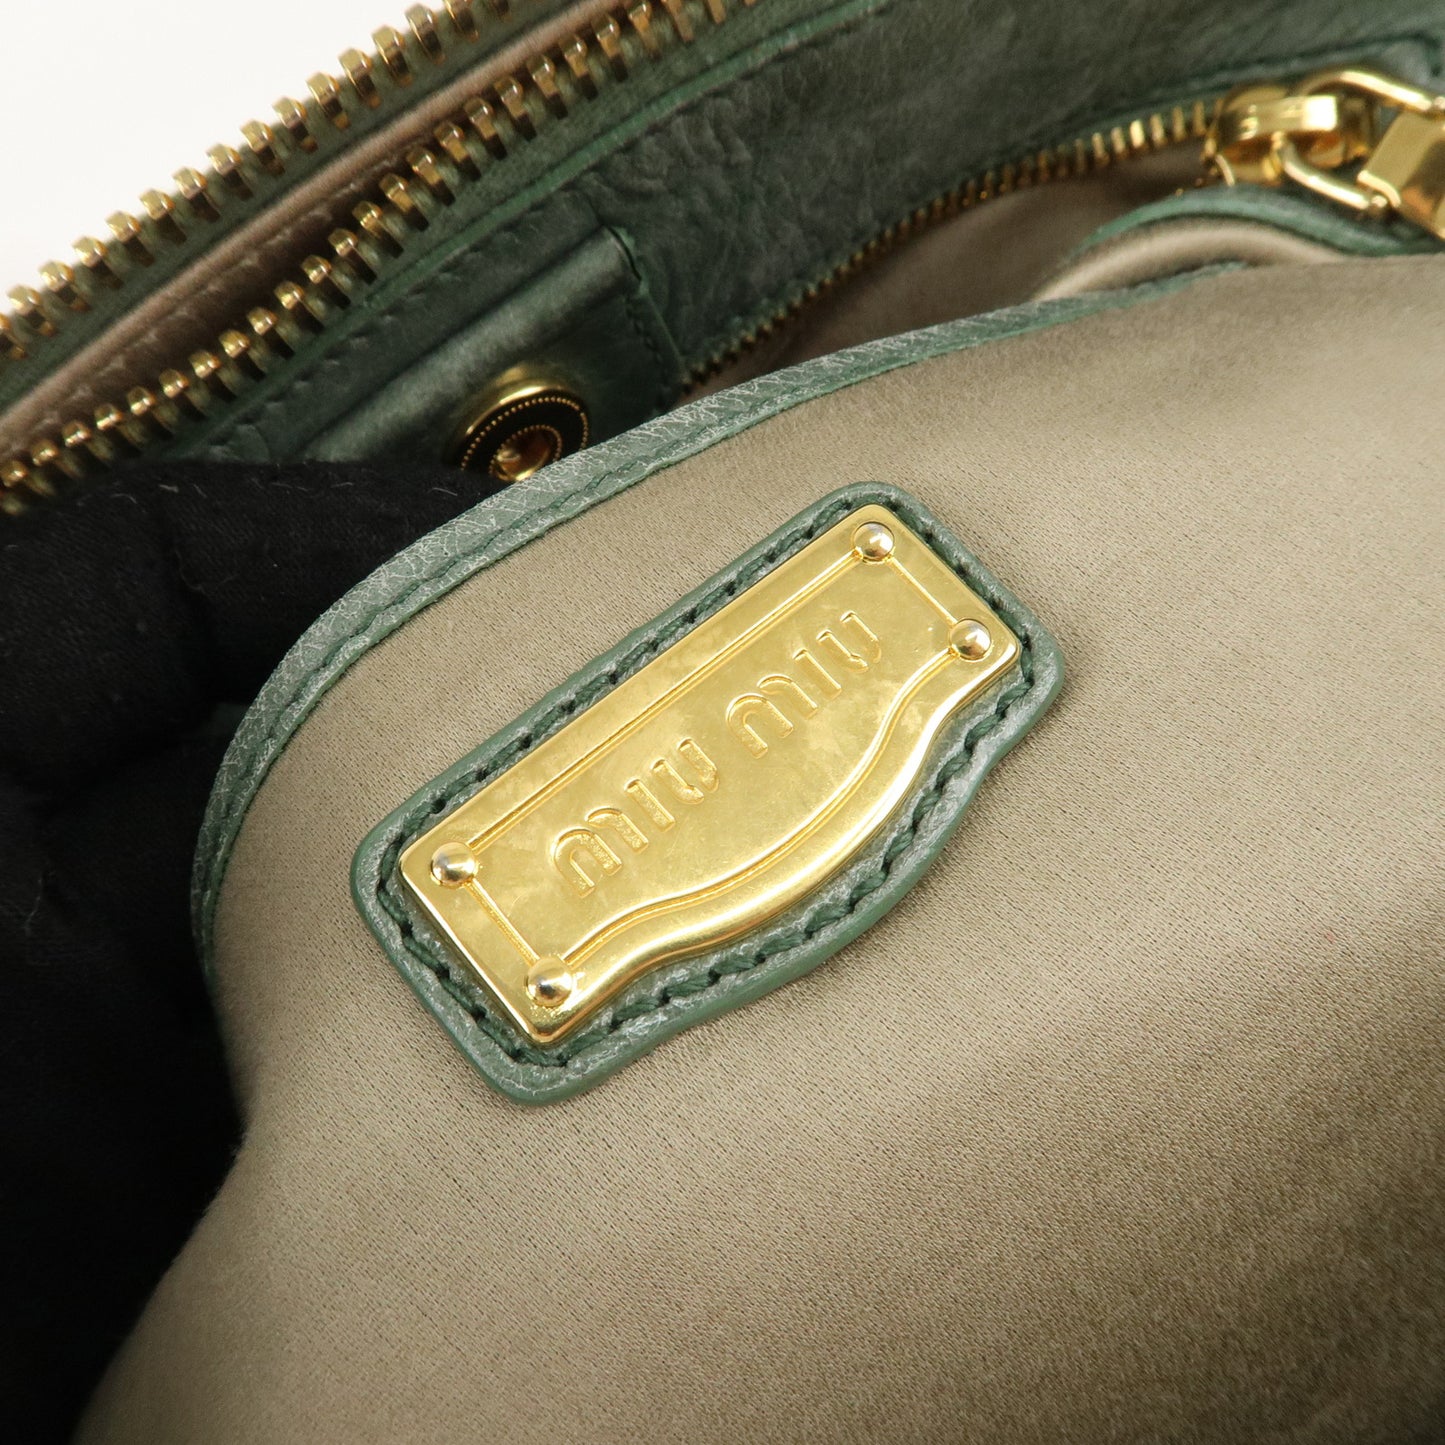 MIU MIU Leather 2Way Bag Hand Bag Shoulder Bag Green